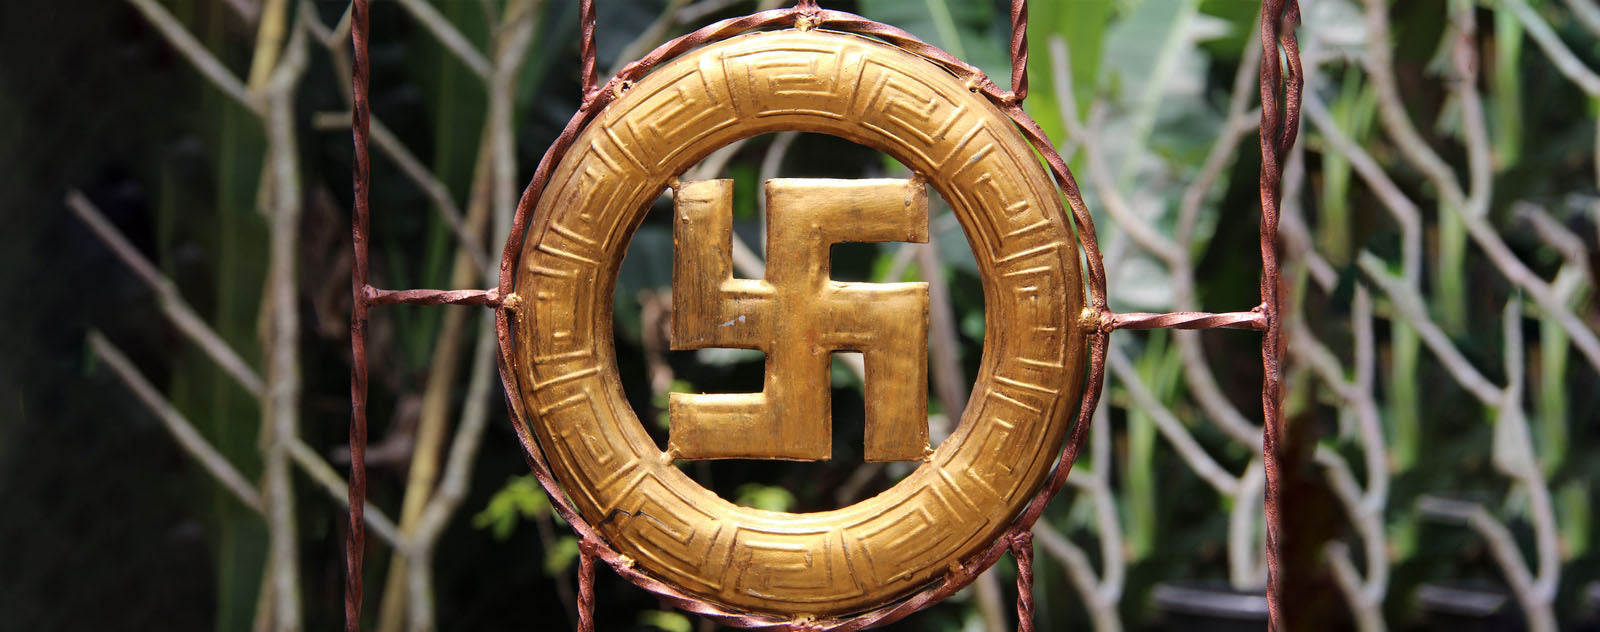 Svastika : Croix Bouddhiste ou Croix Nazie? La vérité